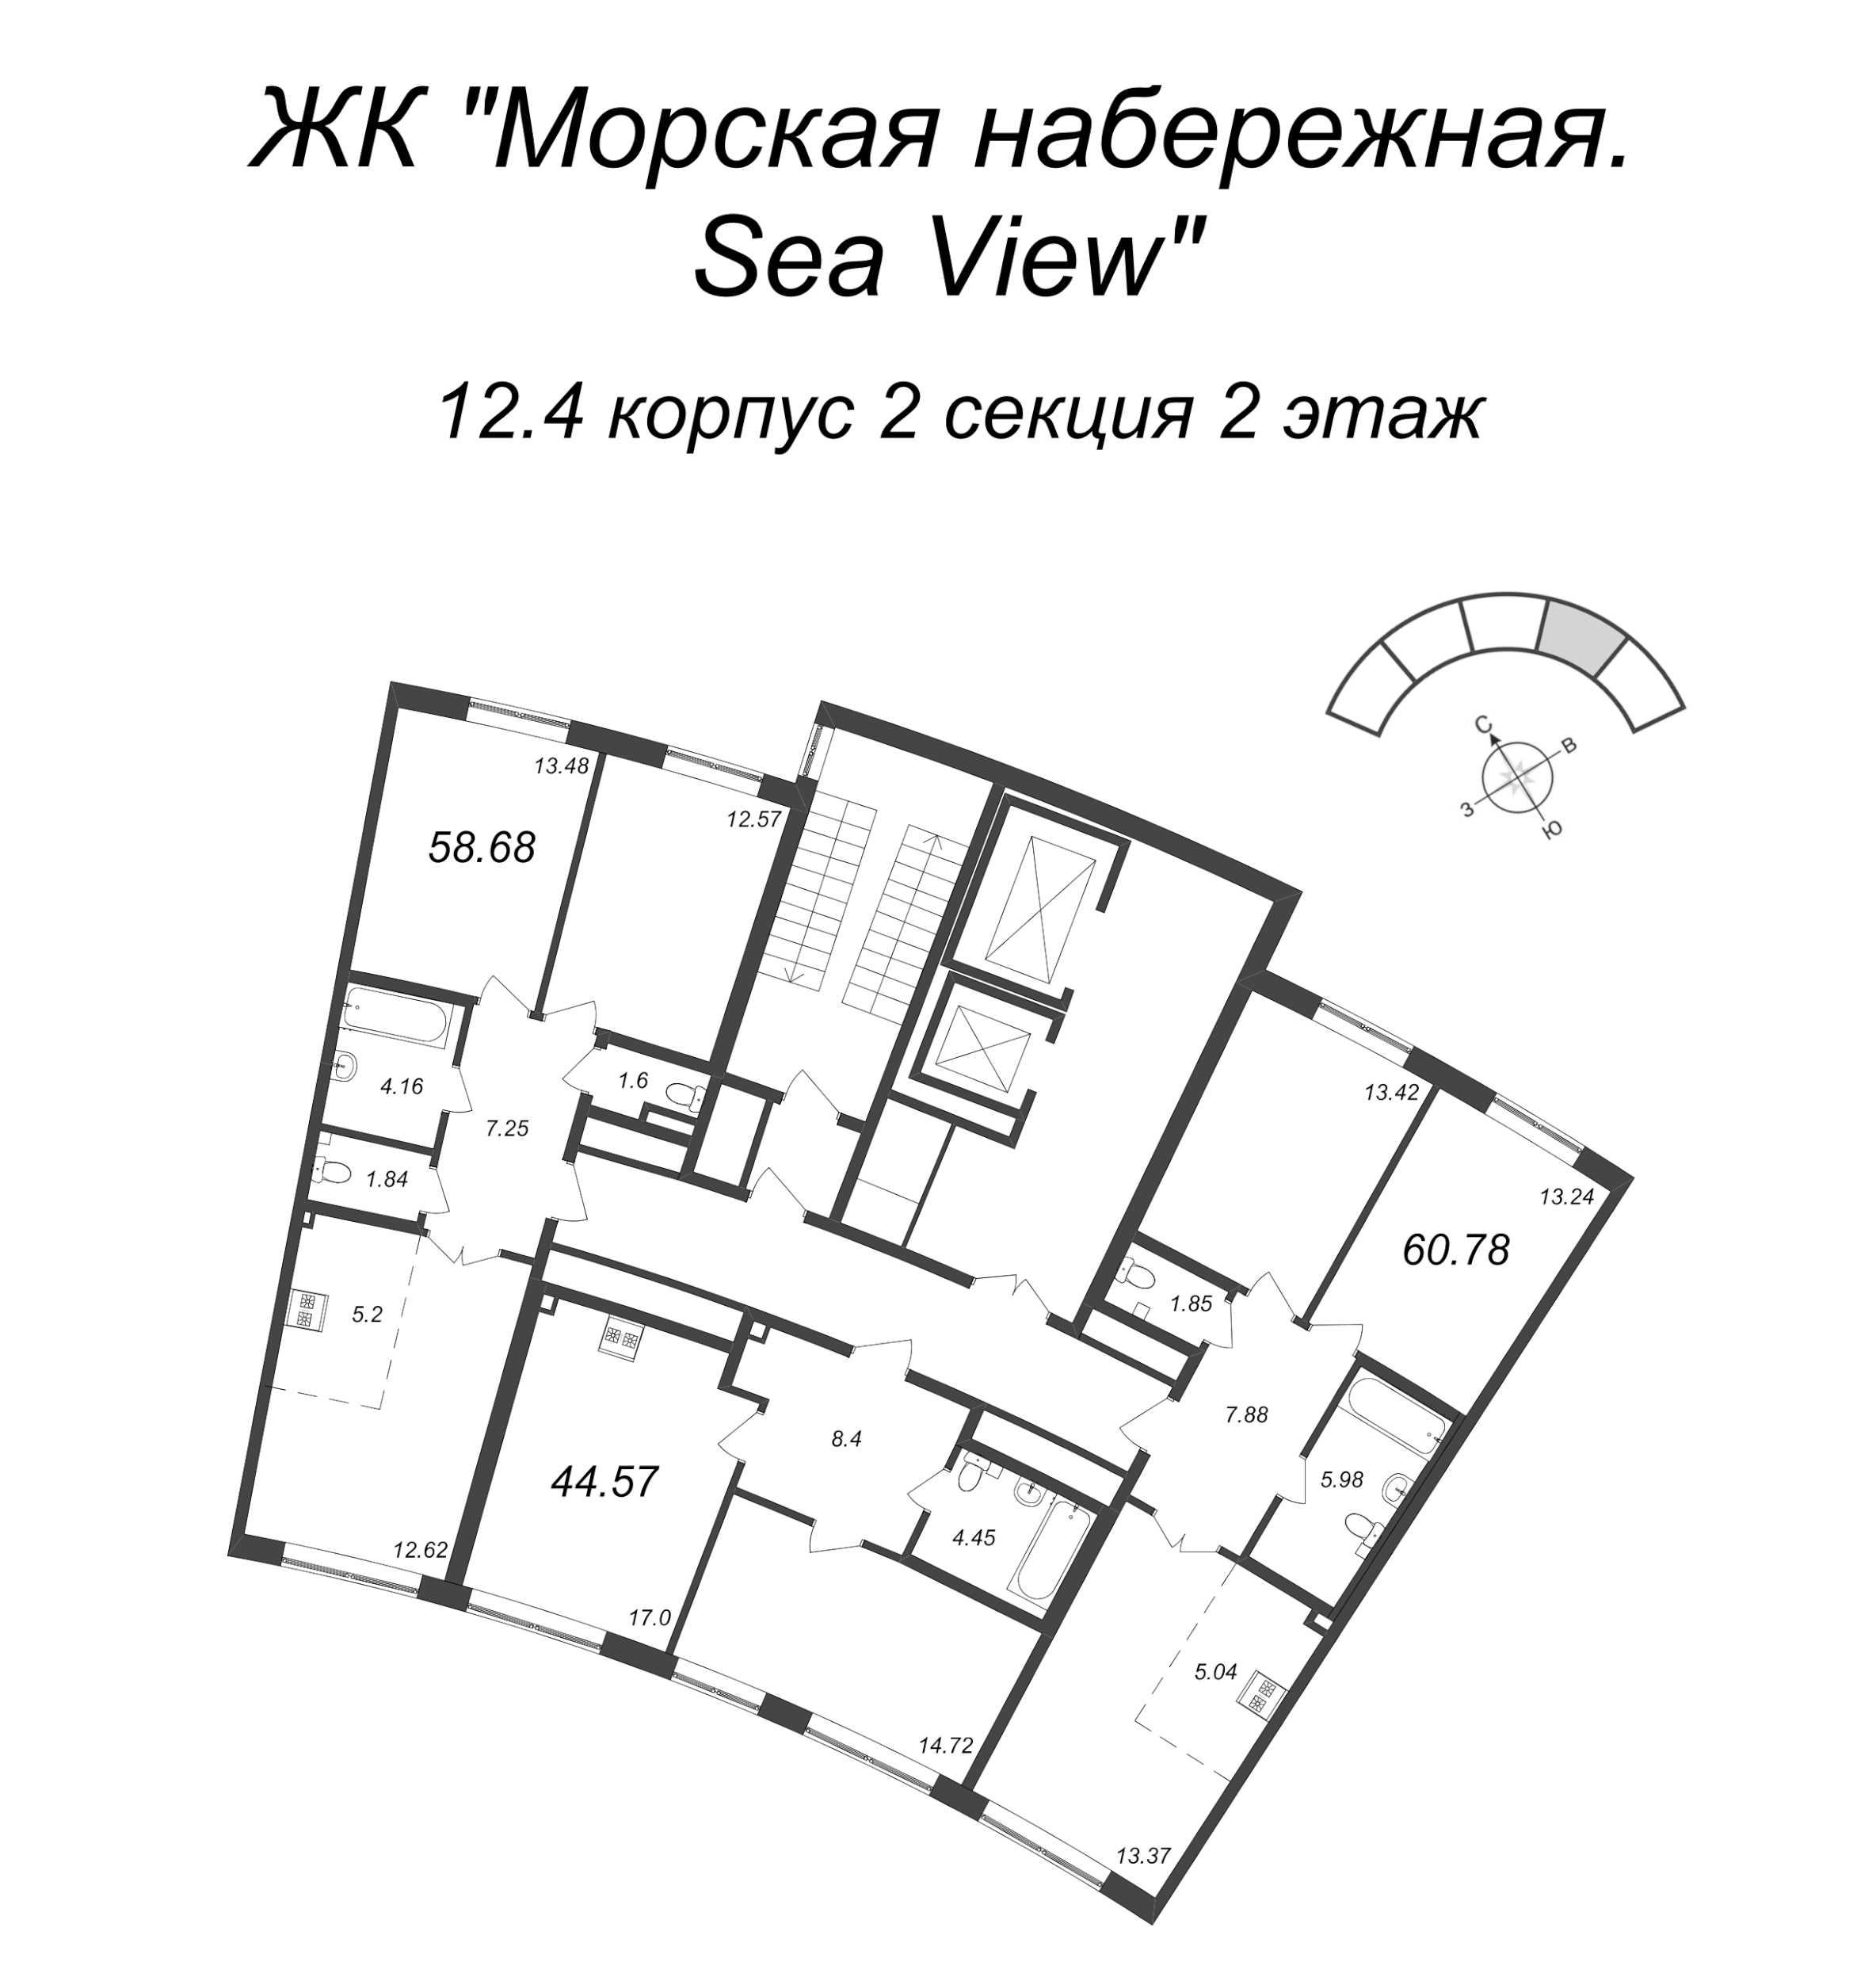 3-комнатная (Евро) квартира, 58.68 м² в ЖК "Морская набережная. SeaView" - планировка этажа